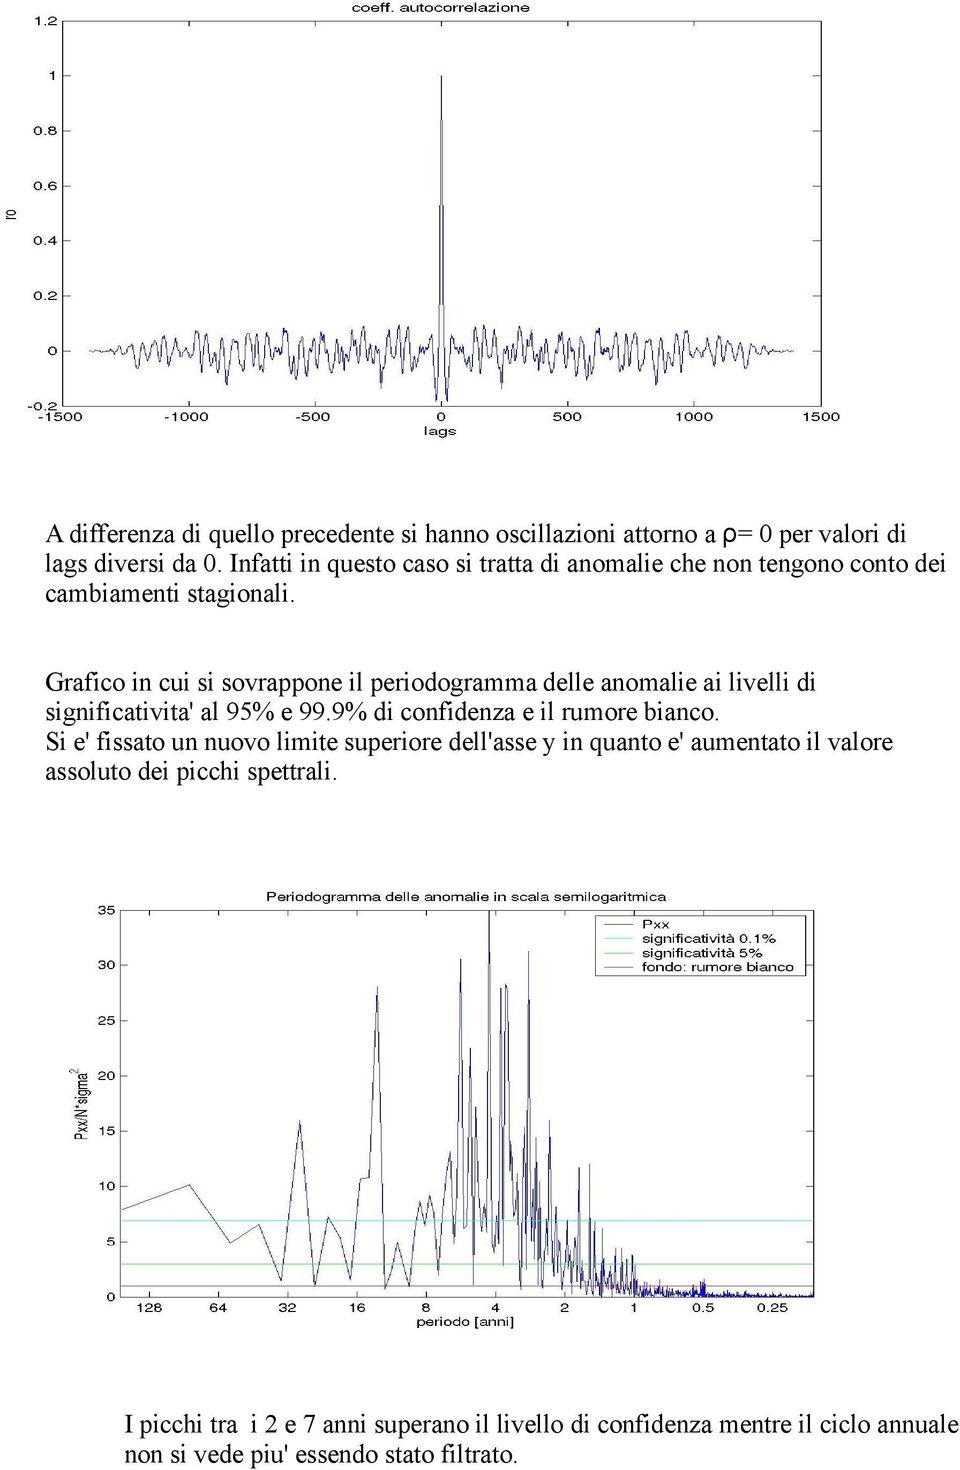 Grafico in cui si sovrappone il periodogramma delle anomalie ai livelli di significativita' al 95% e 99.9% di confidenza e il rumore bianco.